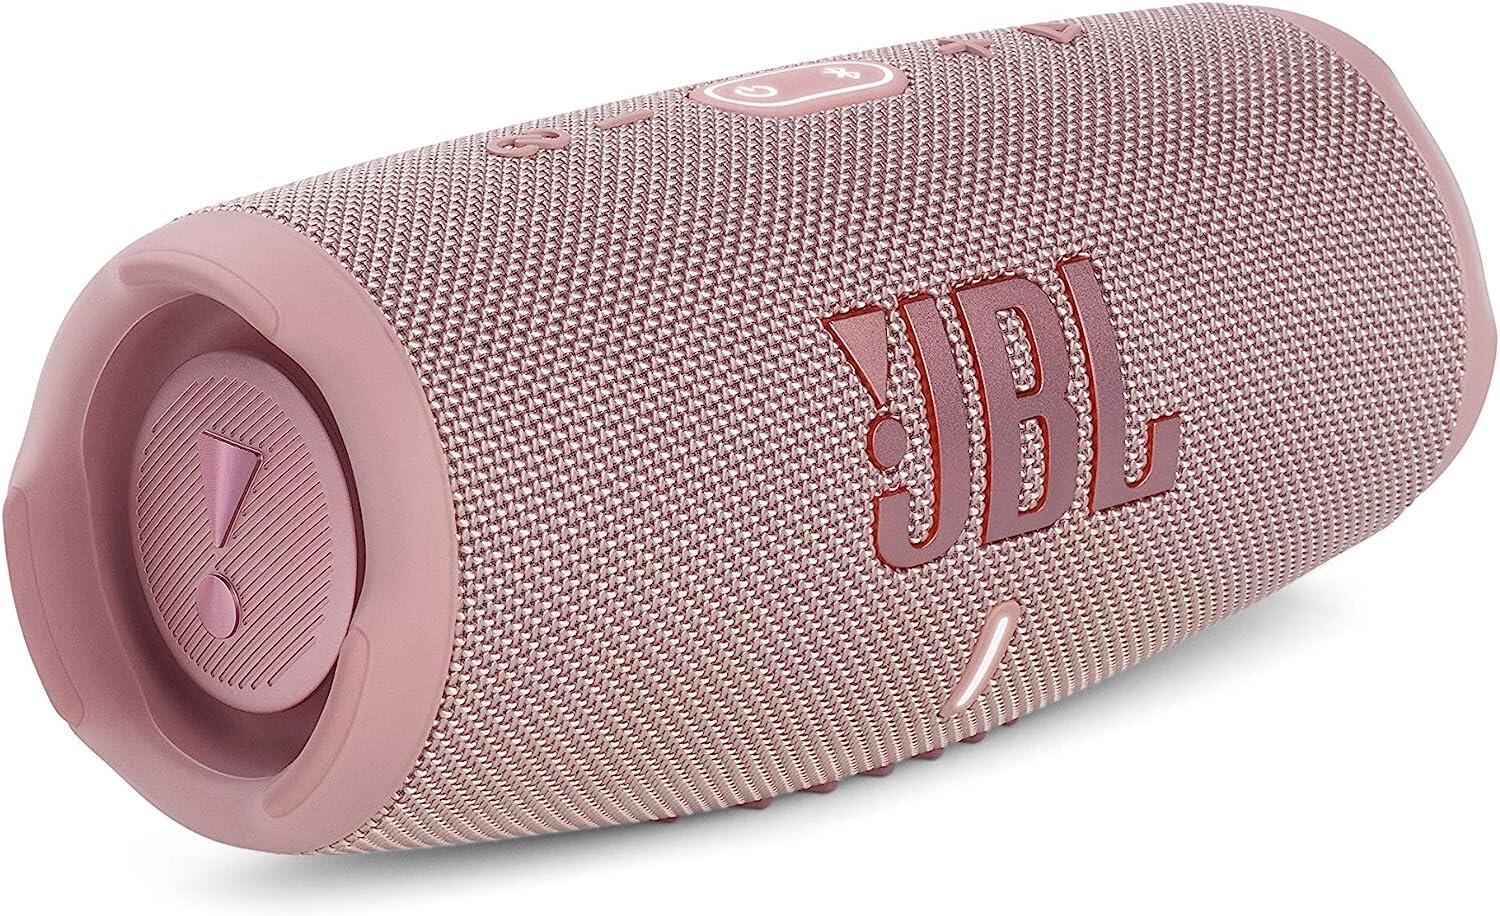 JBL JBL Charge 5 Waterproof Portable Bluetooth Speaker